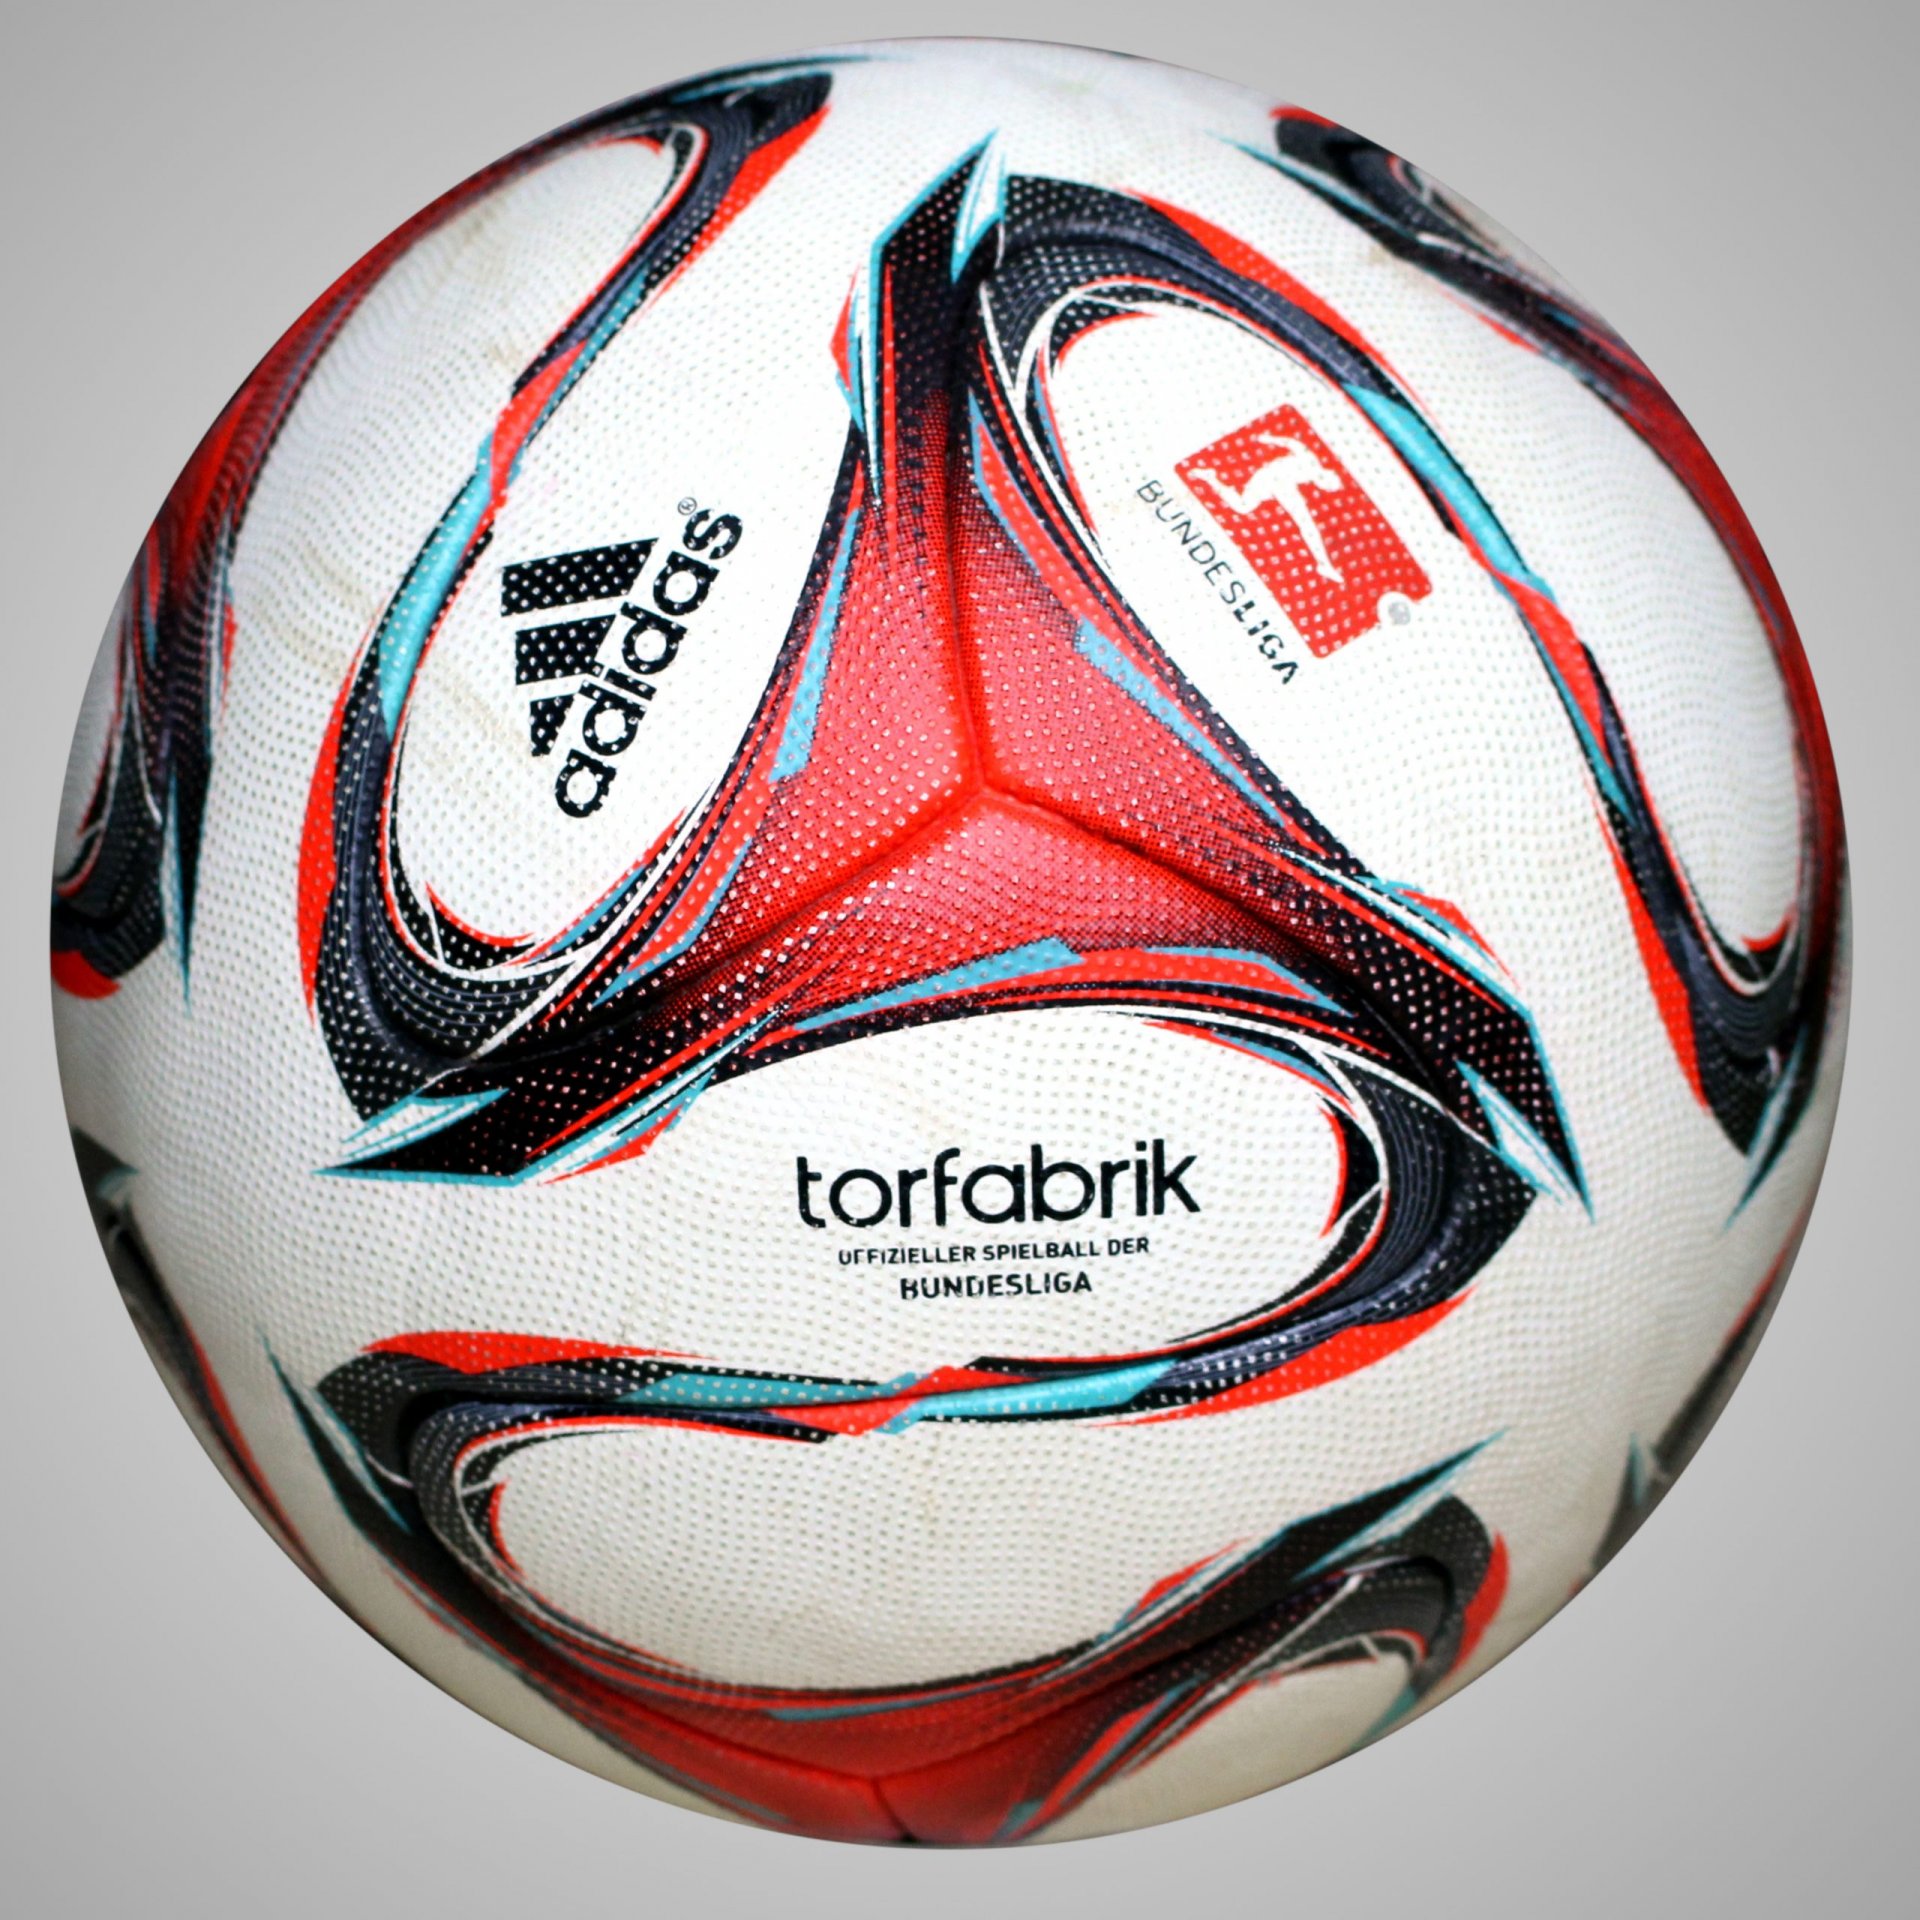 Adidas Torfabrik 2014 Official Matchball